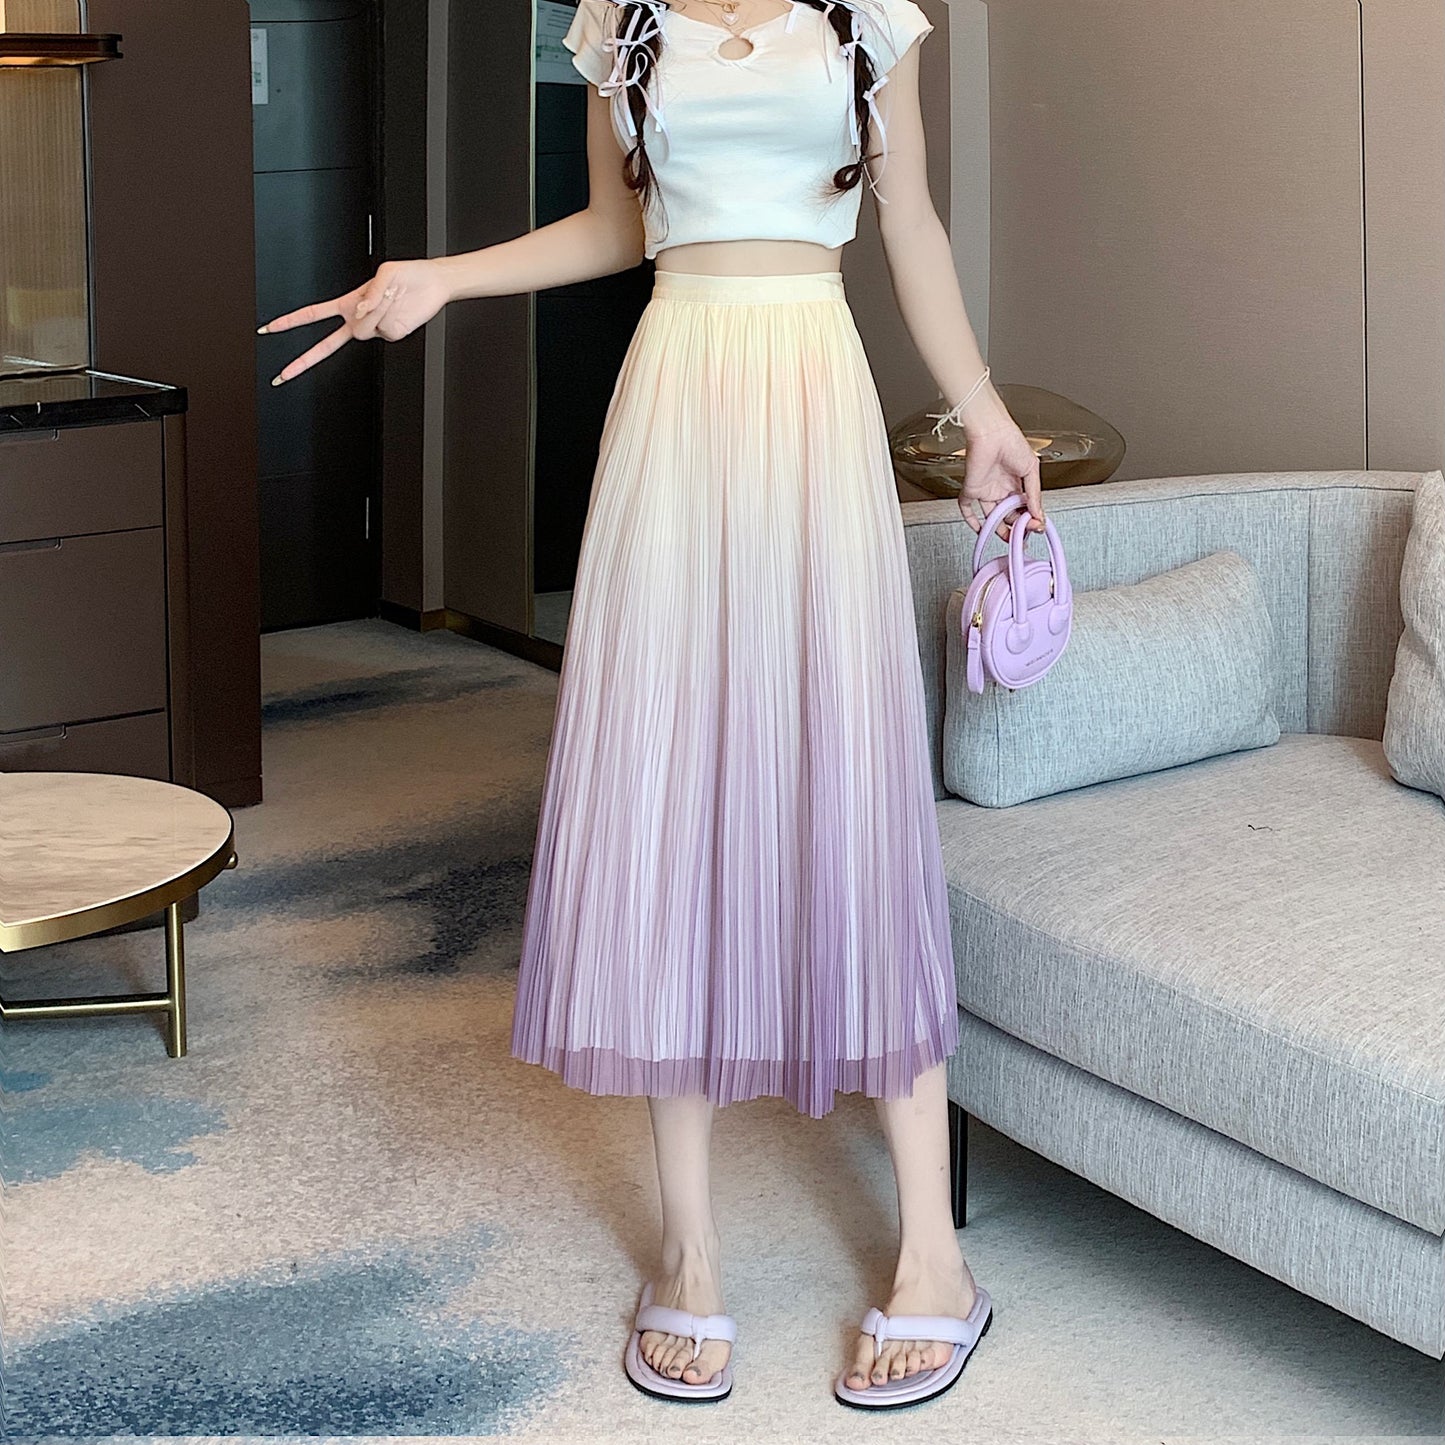 Falda plisada elegante con corte en A, falda completa con pliegues que estiliza la figura y presenta un degradado de colores.